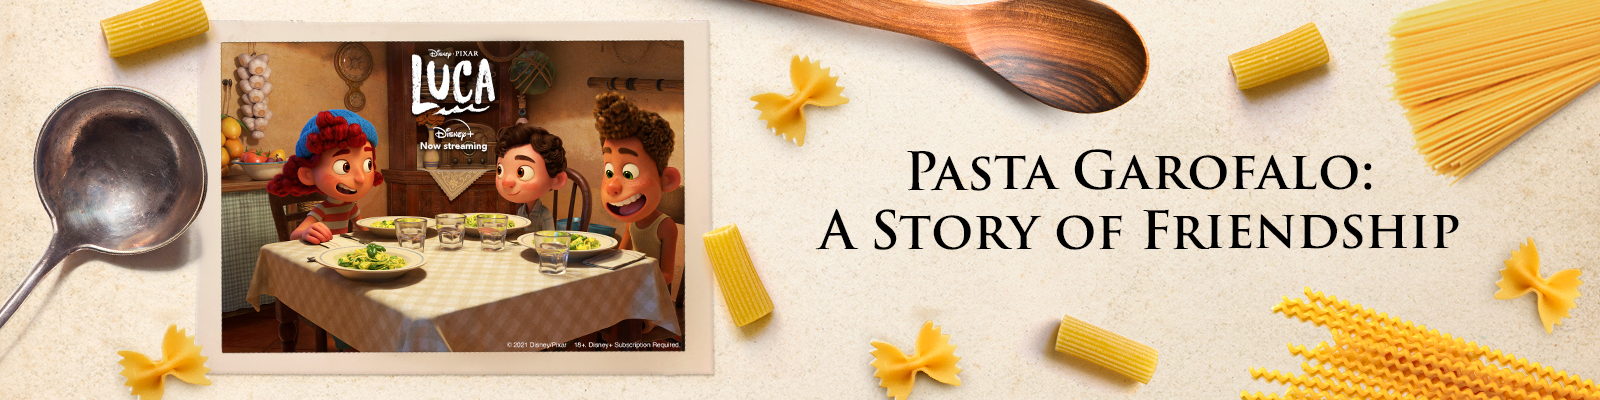 Pasta Garofalo célèbre le goût de l’été italien avec le film Luca de Disney et Pixar